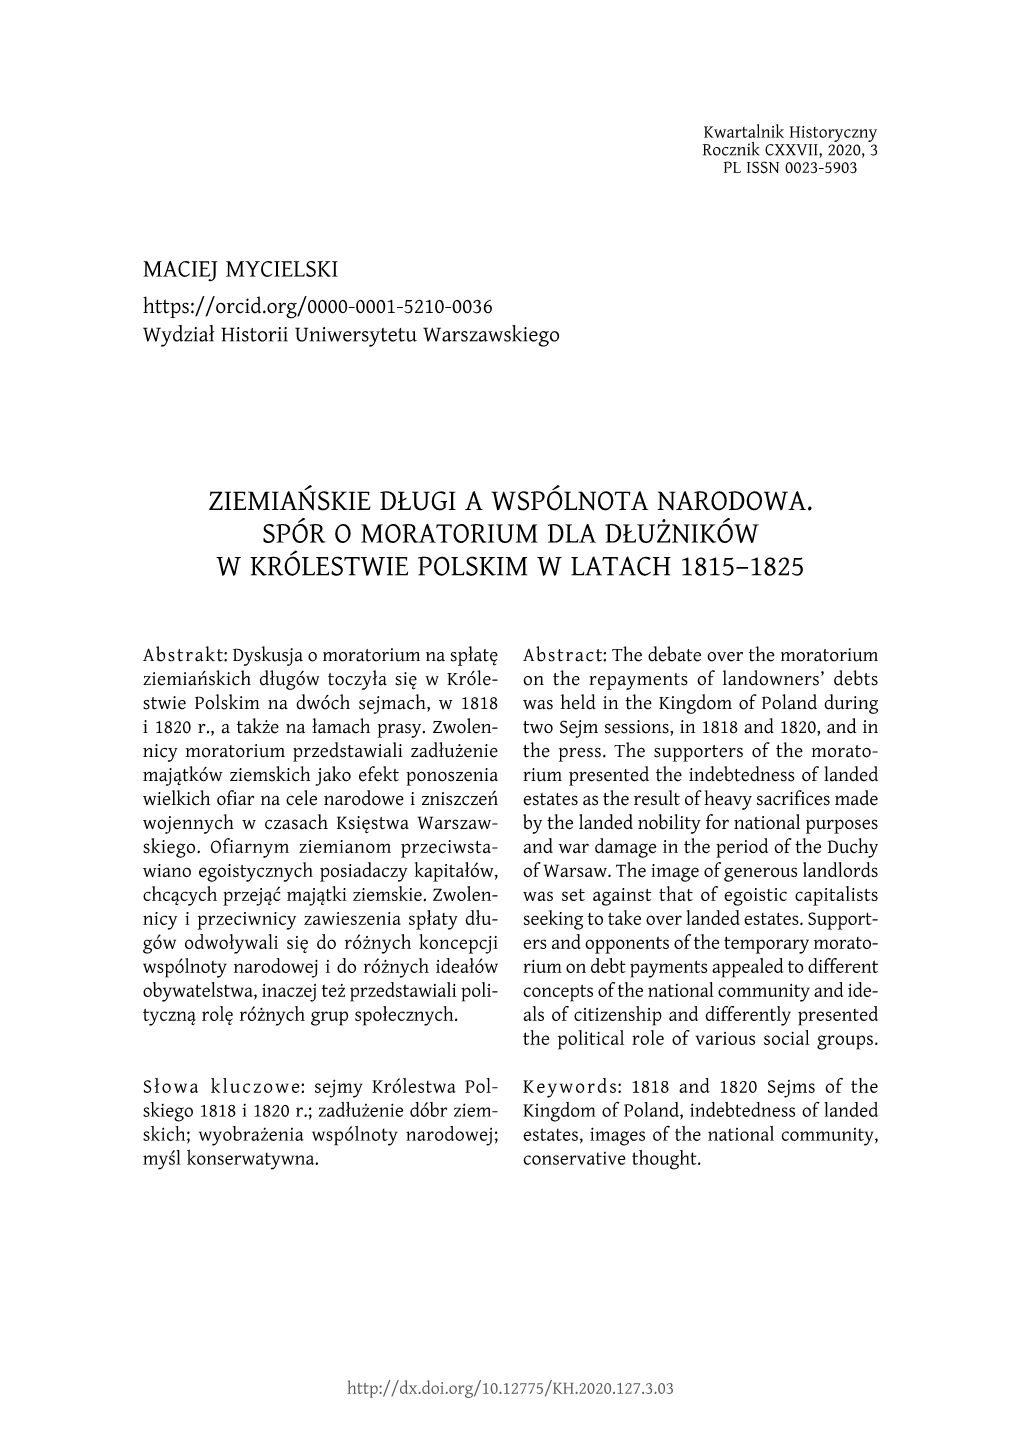 Ziemiańskie Długi a Wspólnota Narodowa. Spór O Moratorium Dla Dłużników W Królestwie Polskim W Latach 1815–1825